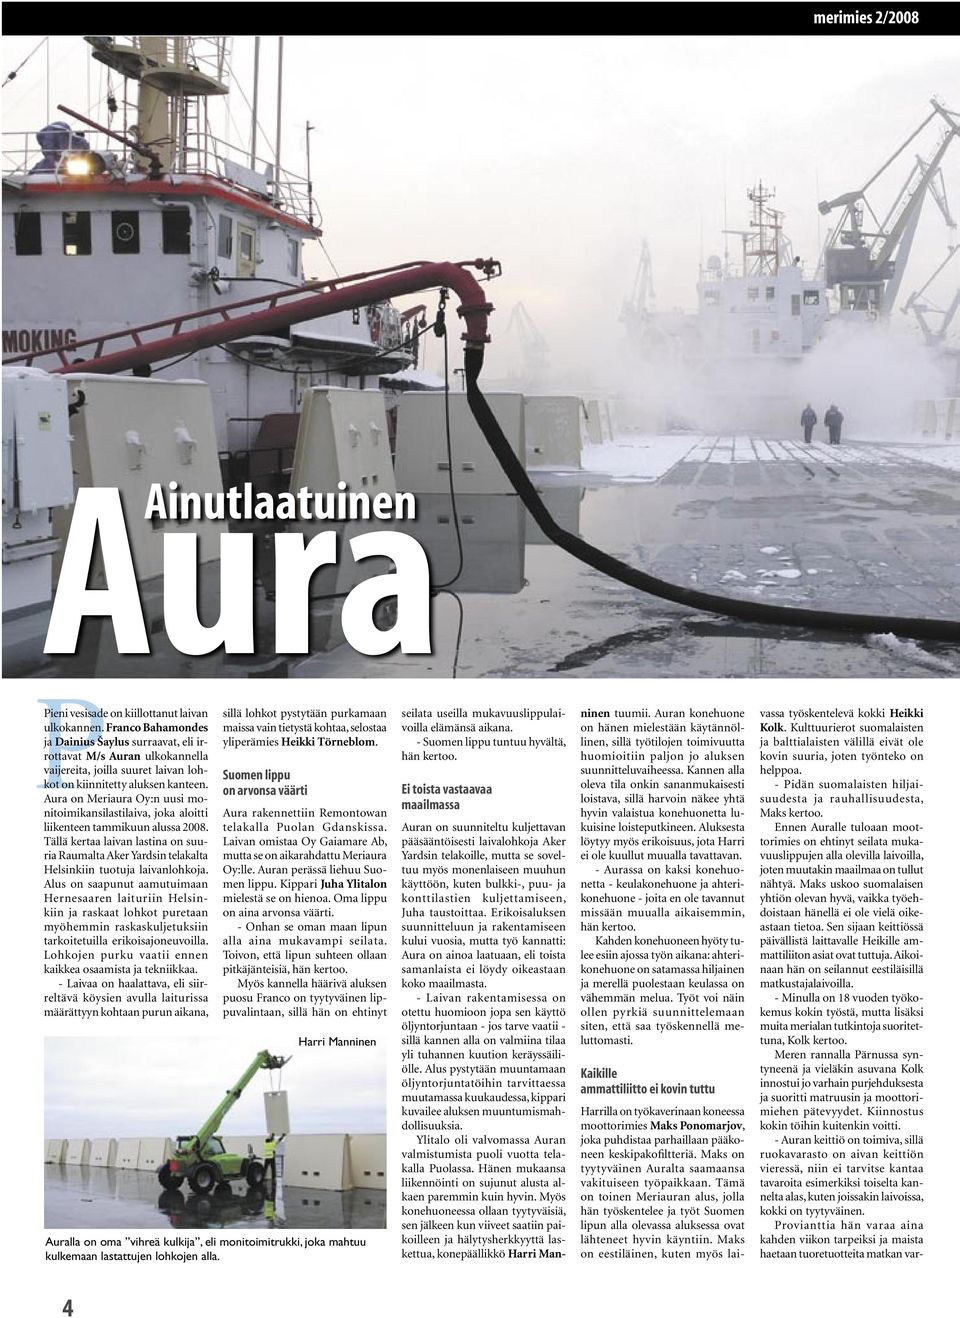 Aura on Meriaura Oy:n uusi monitoimikansilastilaiva, joka aloitti liikenteen tammikuun alussa 2008.